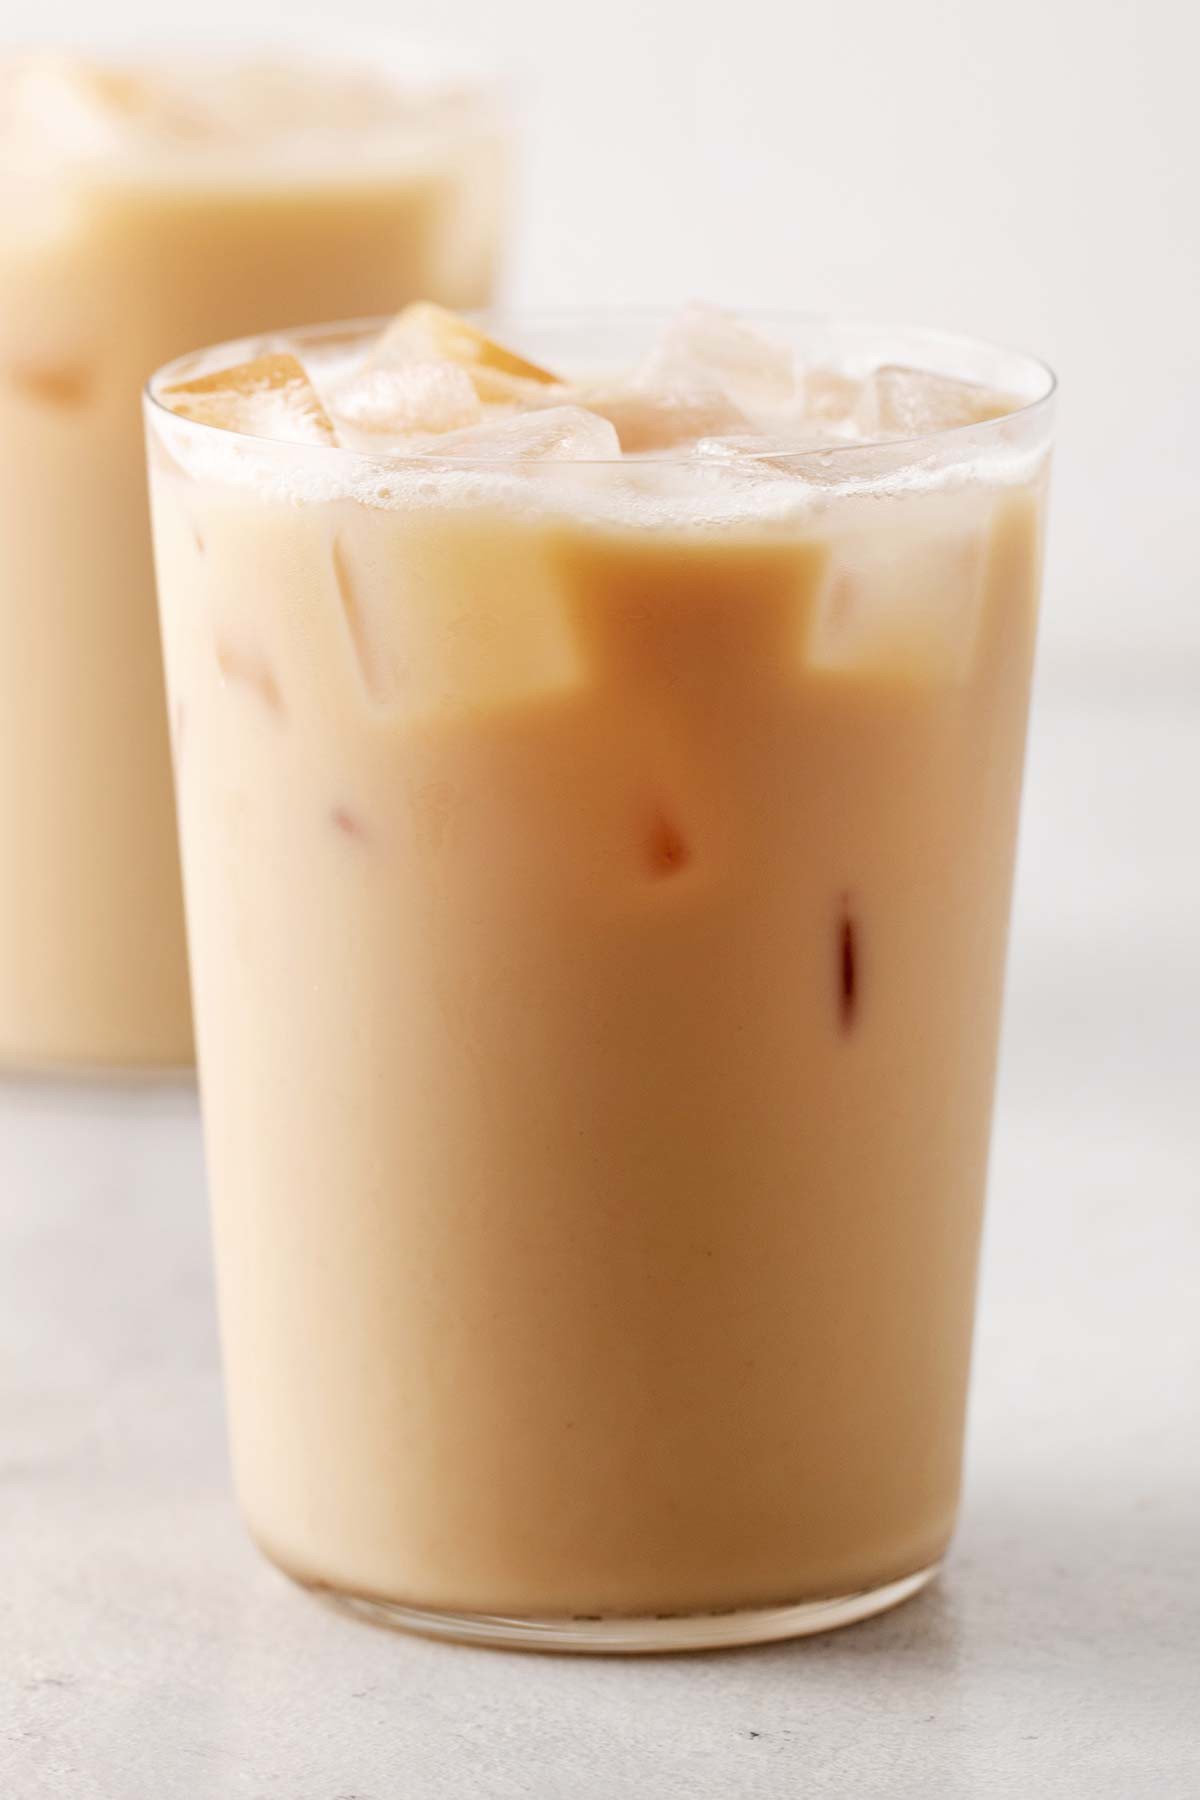 iced london fog tea latte starbucks review